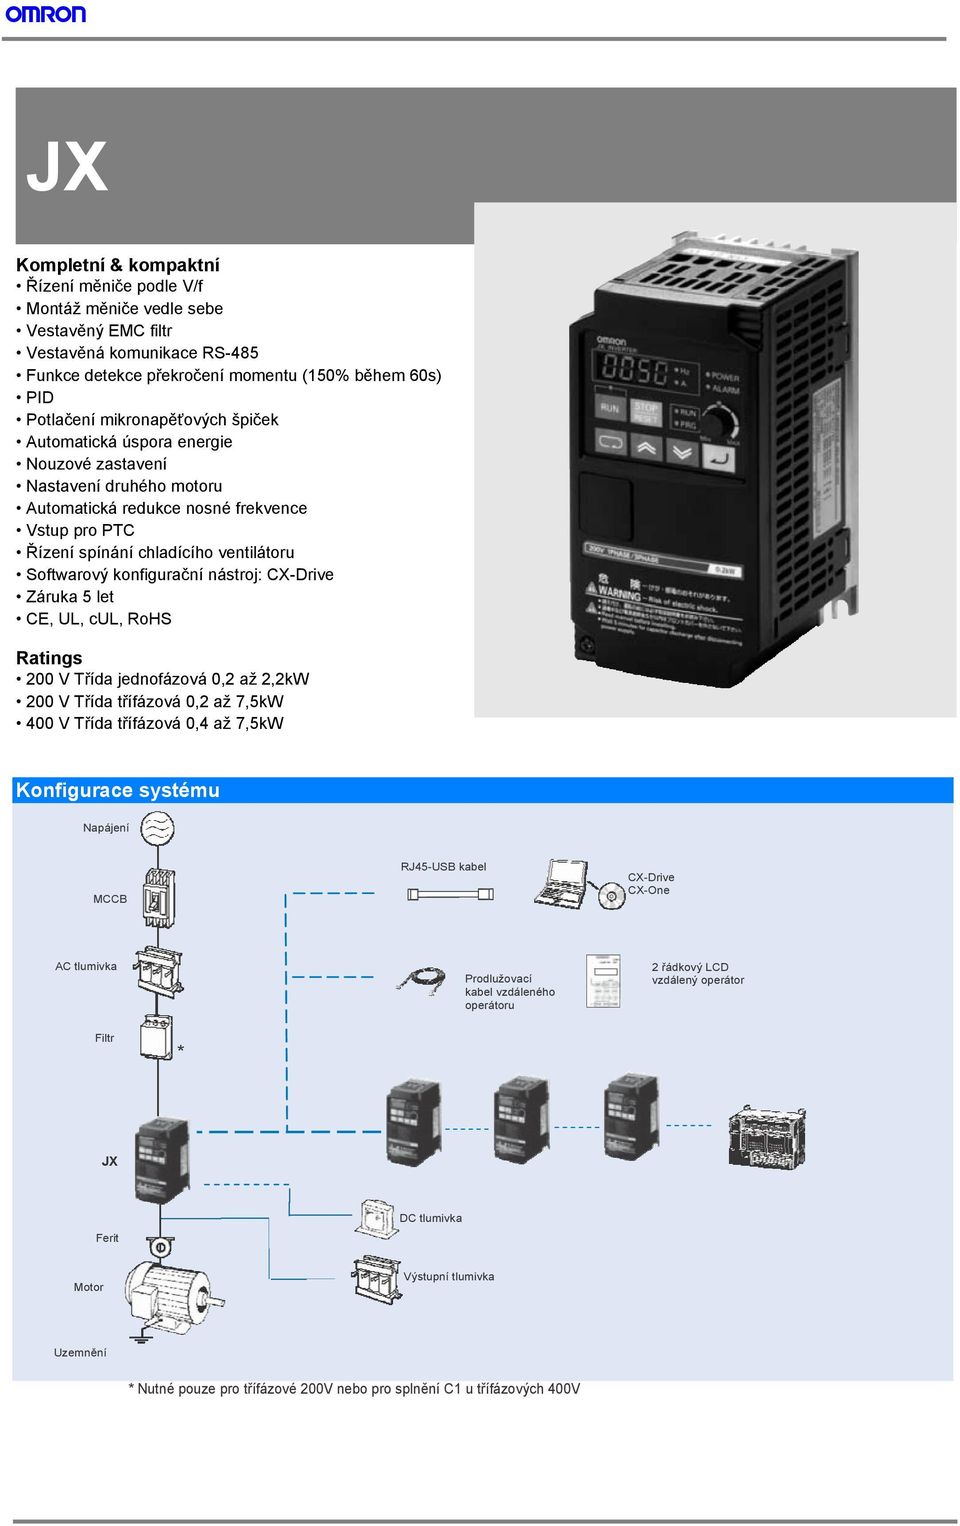 CX-Drive Záruka 5 let CE, UL, cul, RoHS Ratings 200 V Třída jednofázová 0,2 až 2,2kW 200 V Třída třífázová 0,2 až 7,5kW 400 V Třída třífázová 0,4 až 7,5kW Konfigurace systému MCCB RJ45-USB kabel